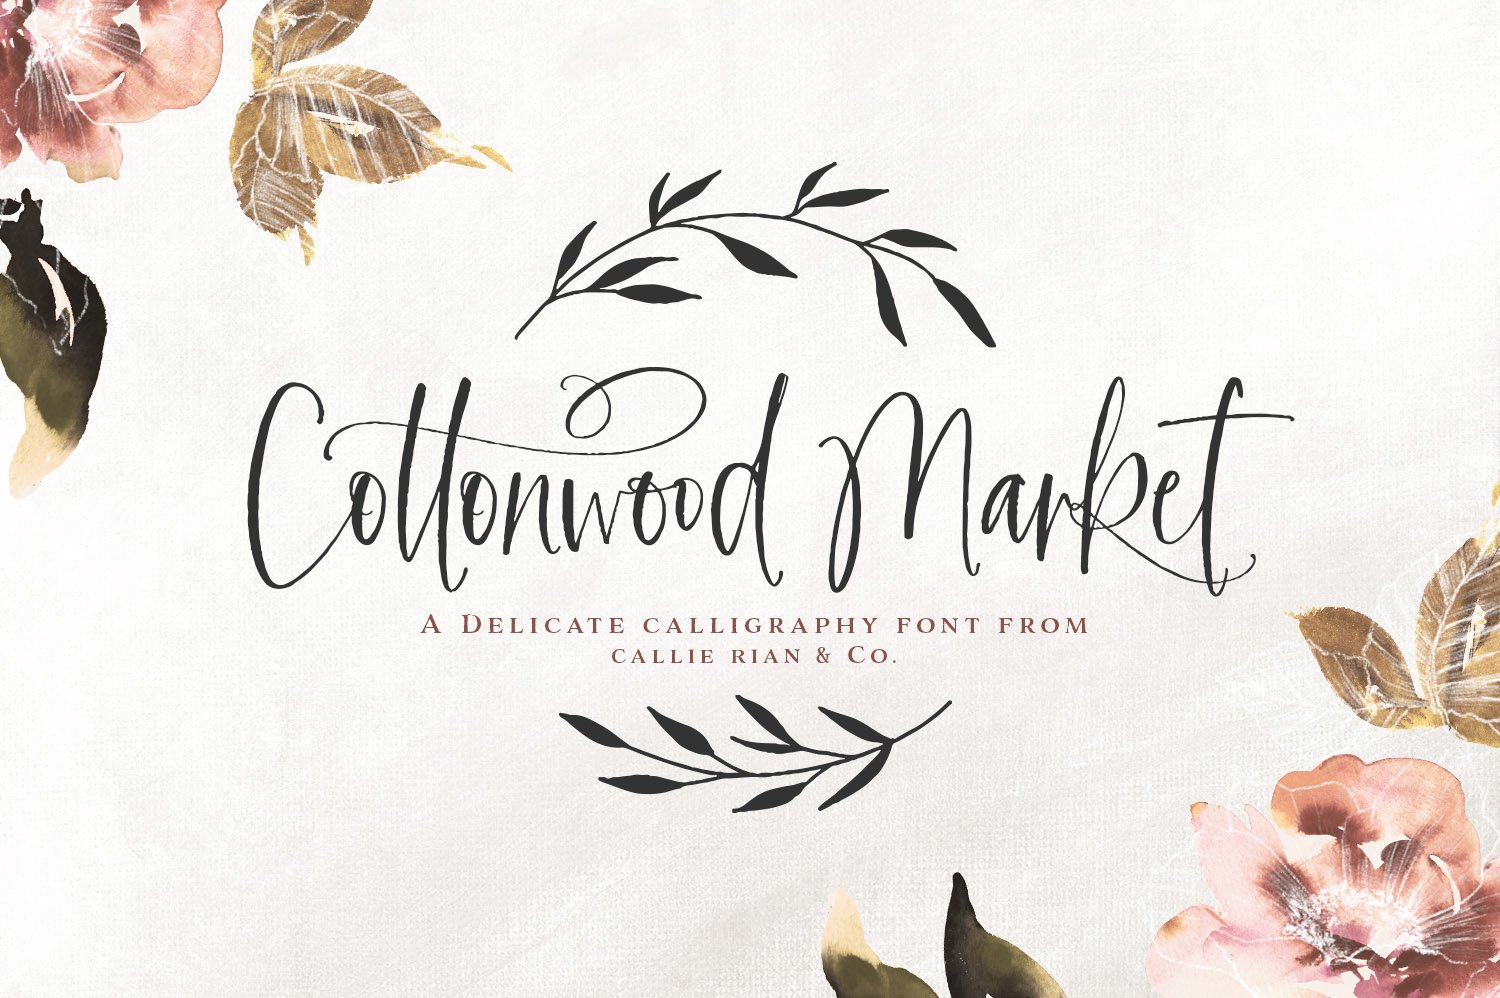 Cottonwood Market Calligraphy Type